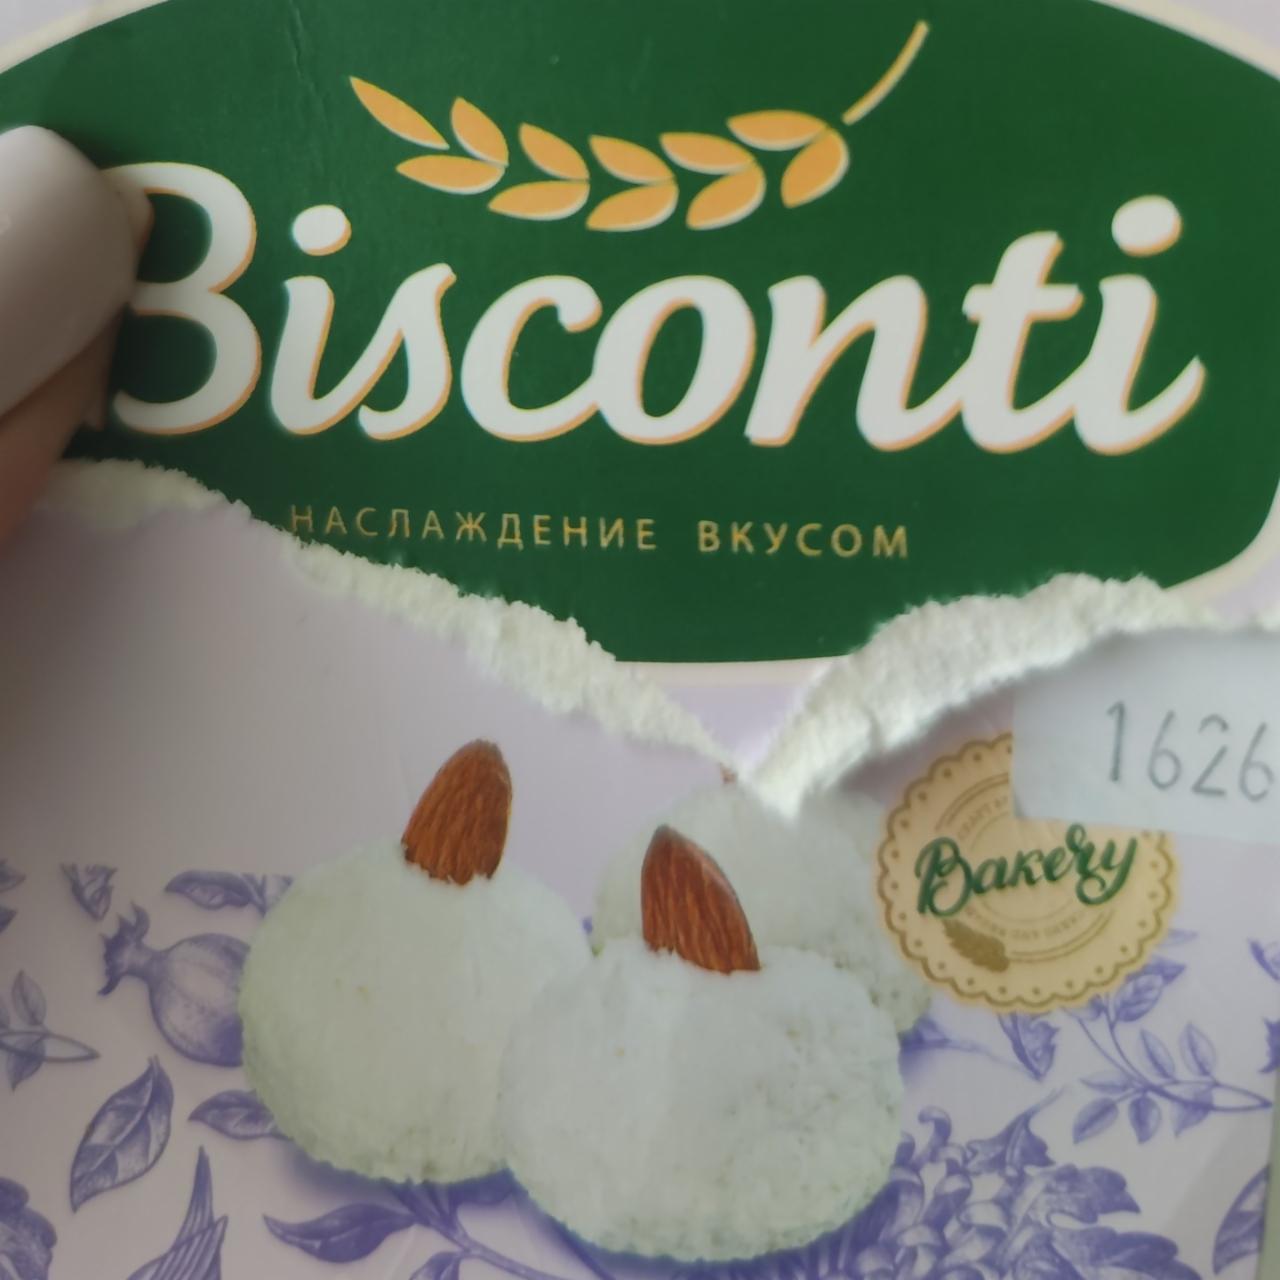 Фото - Набор пирожных кокосики Bisconti